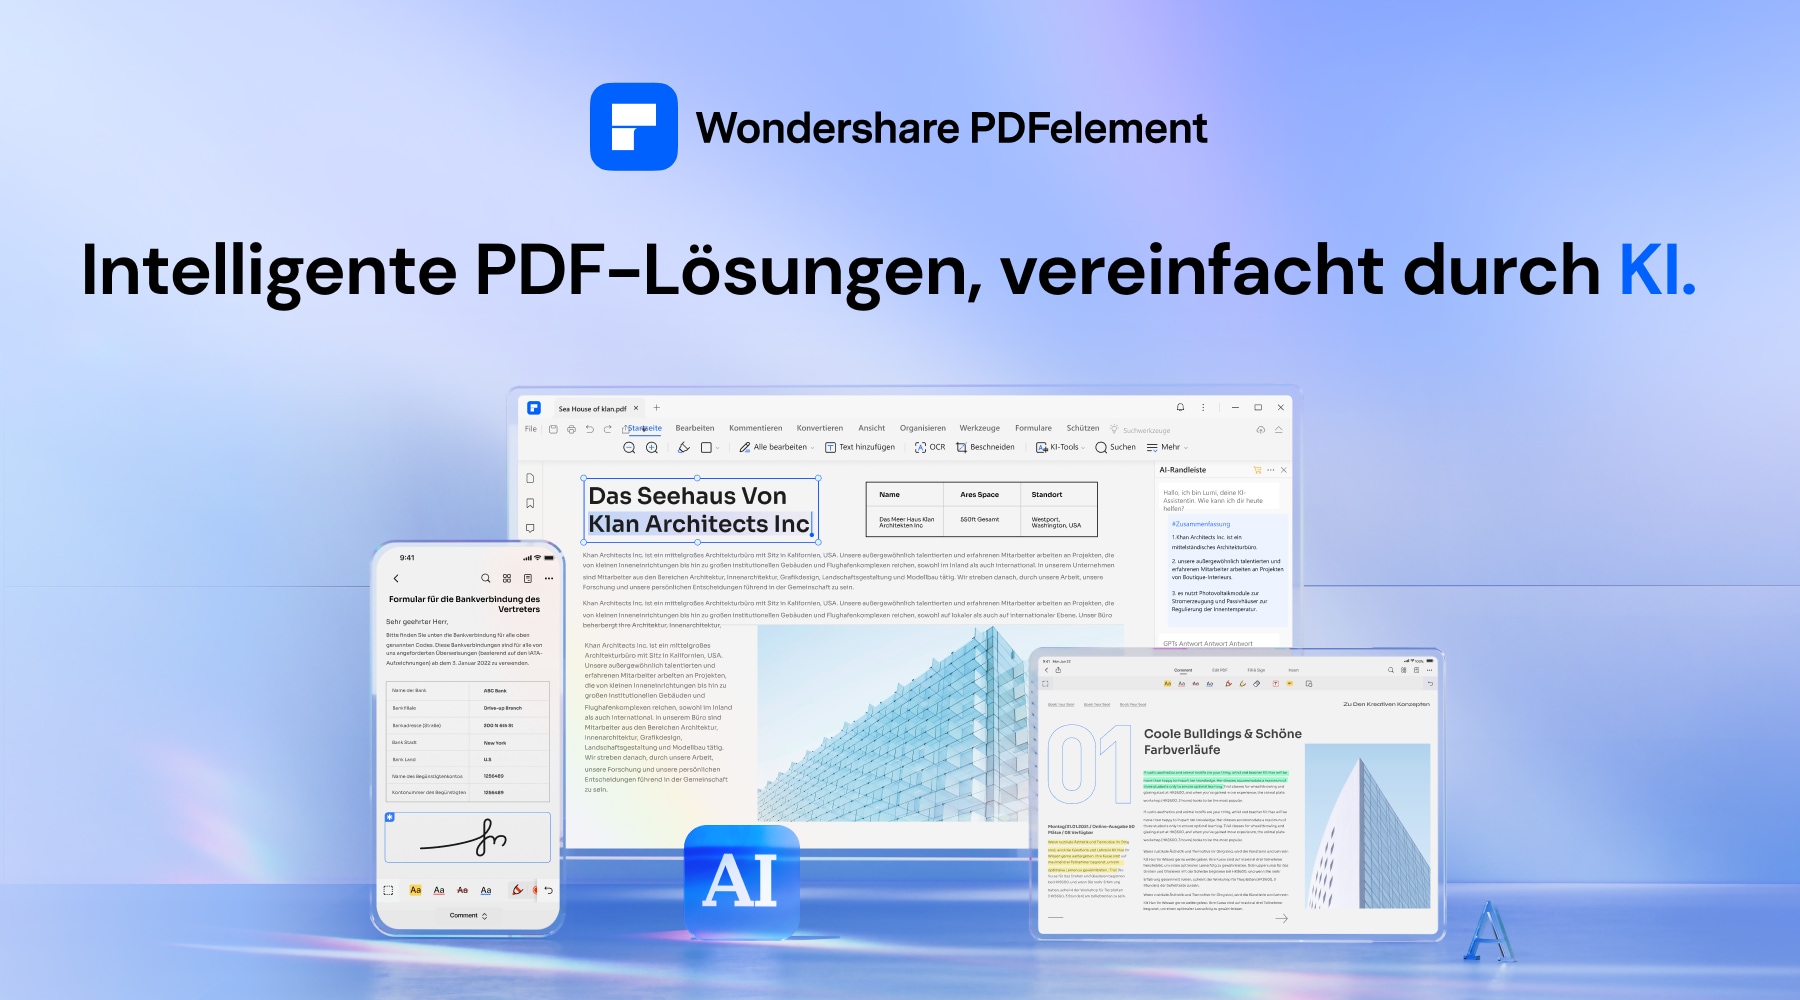 PDFelement ist ein vielseitiges Tool zur PDF-Bearbeitung, das Ihnen den Umgang mit Ihren PDFs erleichtert. Es ist, als hätte man ein leistungsstarkes und multifunktionales Schweizer Taschenmesser für PDFs. Eine der herausragenden Funktionen ist die Entfernung von Wasserzeichen, die durch KI-Technologie ermöglicht wird.